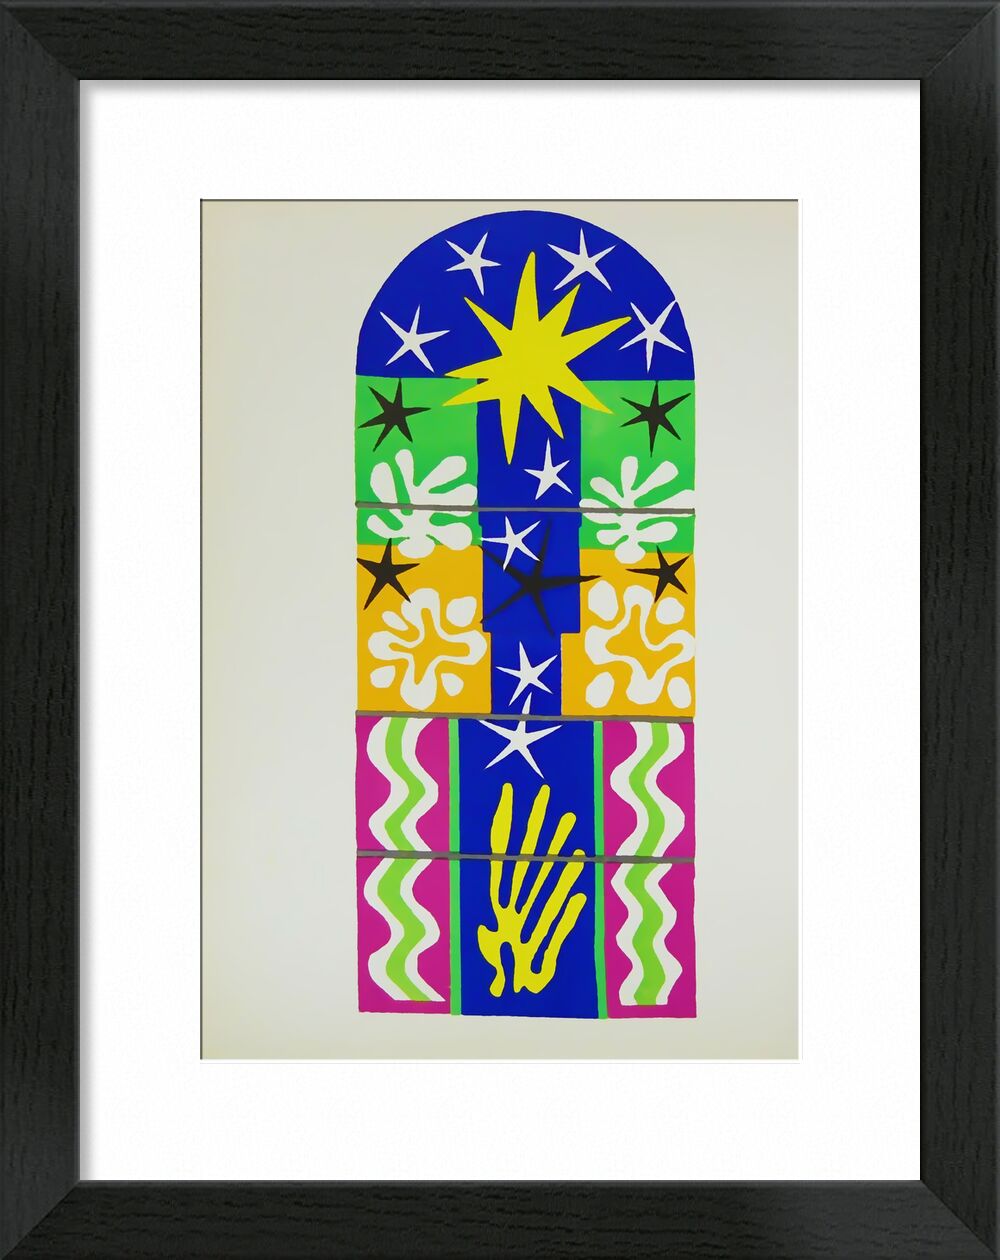 Verve, Christmas Night - Henri Matisse von Bildende Kunst, Prodi Art, Matisse, Weihnachten, Zeichnung, Collage